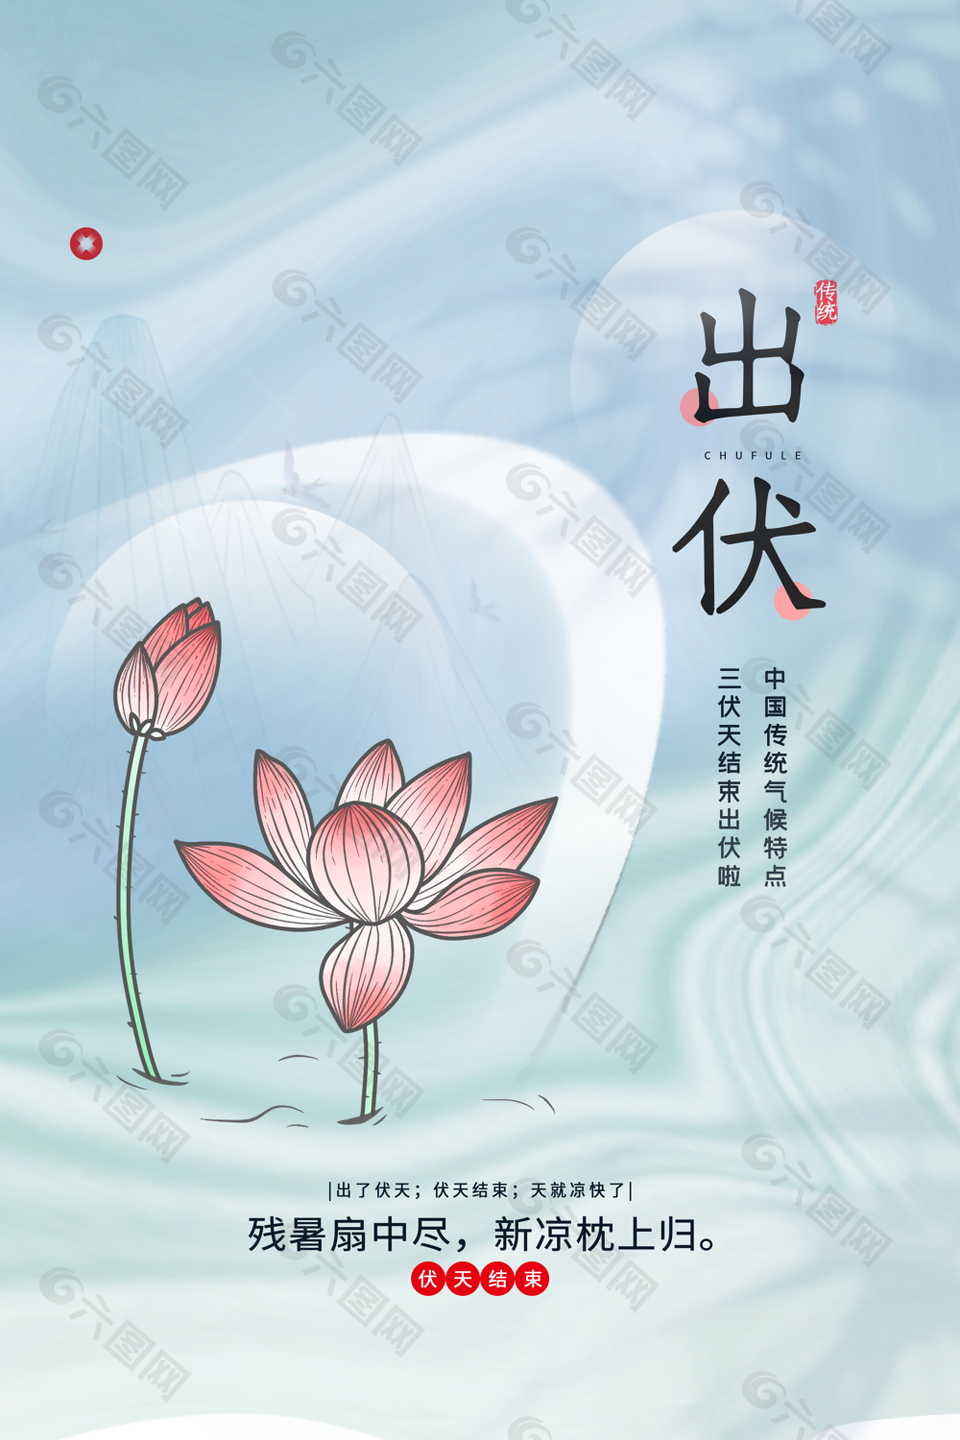 典雅中国风手绘传统节气出伏宣传海报图下载